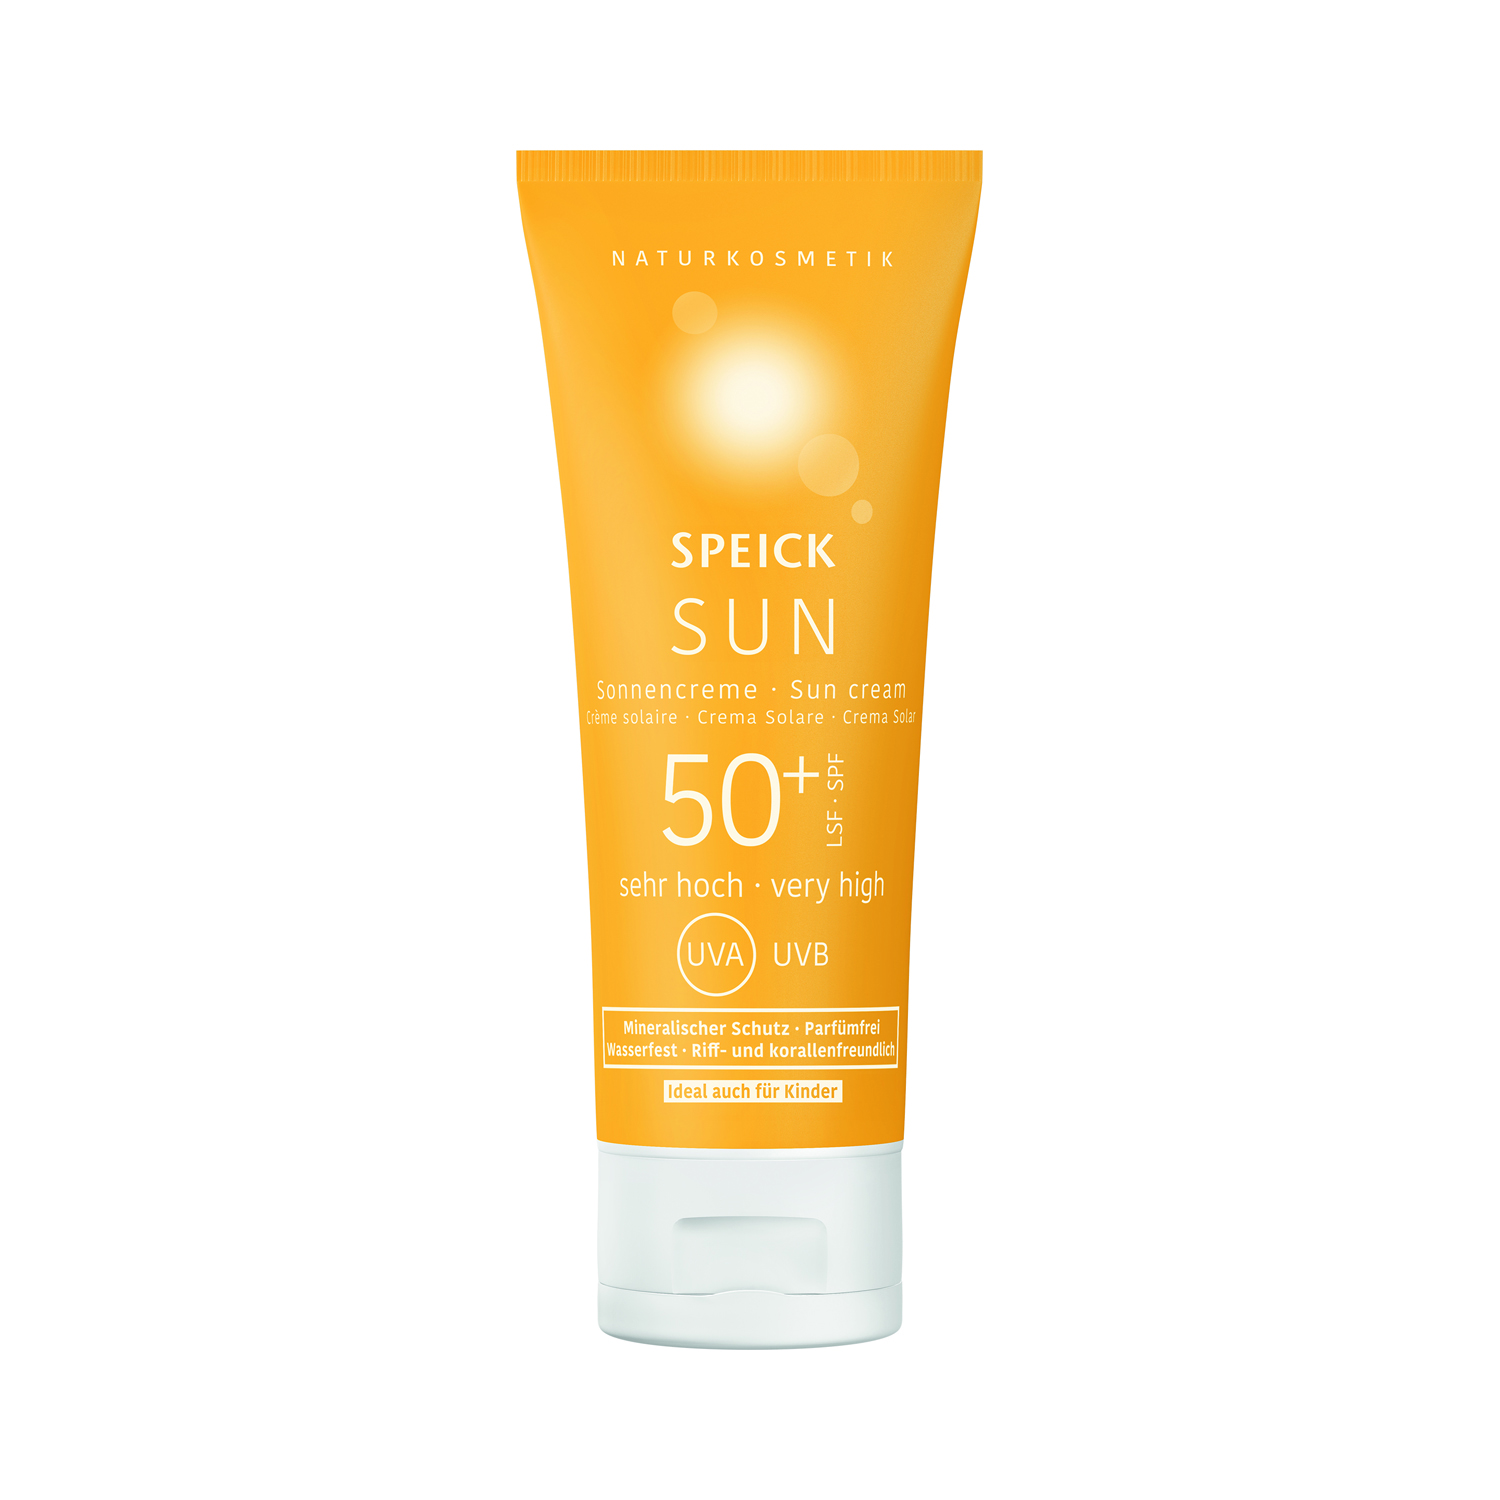 Speick Sun - Sonnencreme LSF 50+